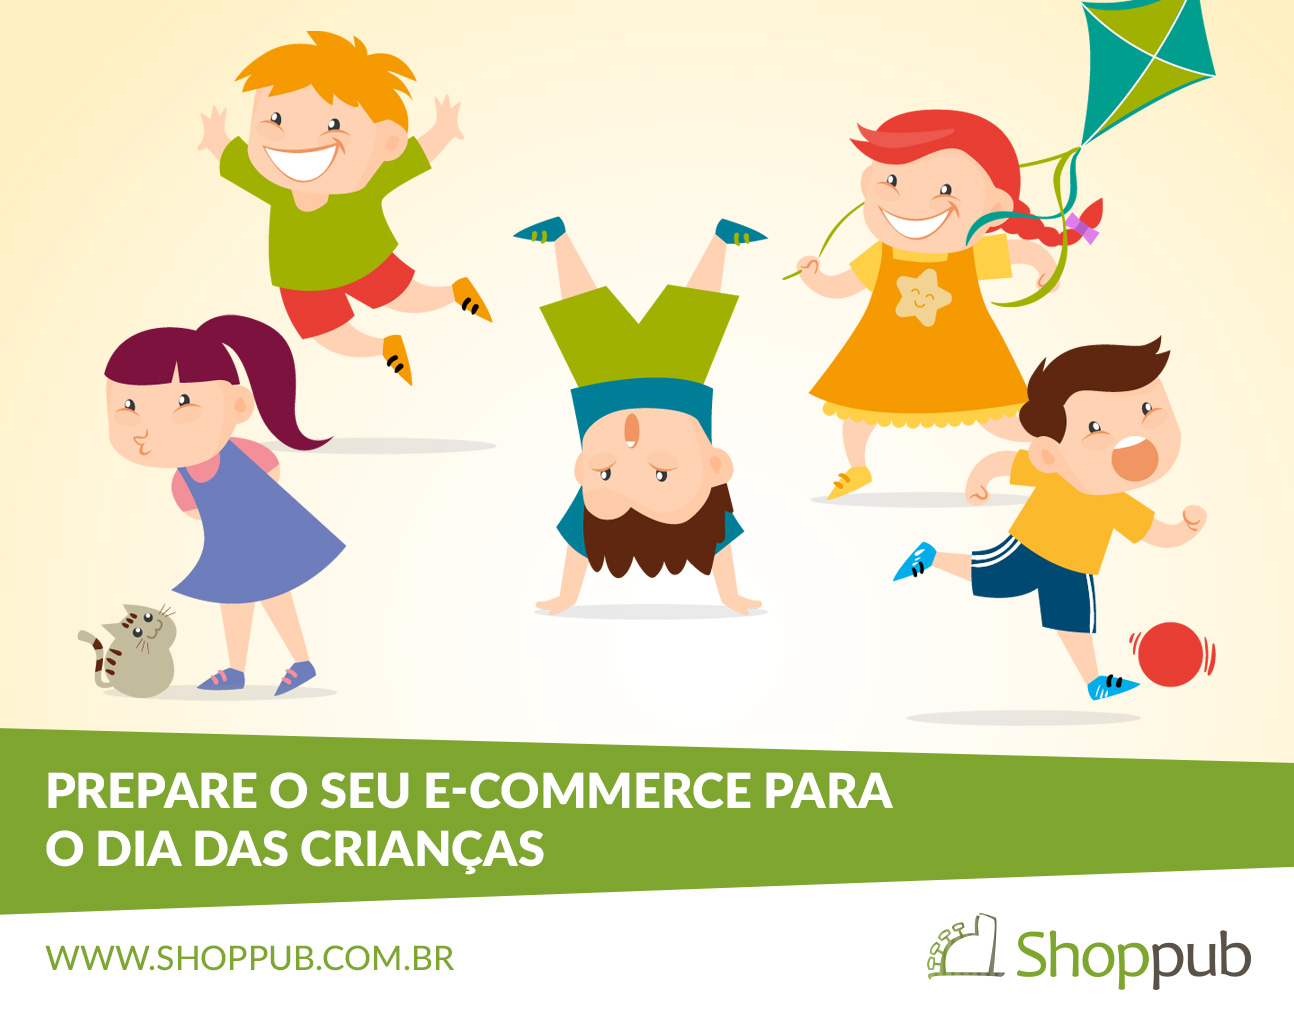 Prepare o seu e-commerce para o Dia das Crianças